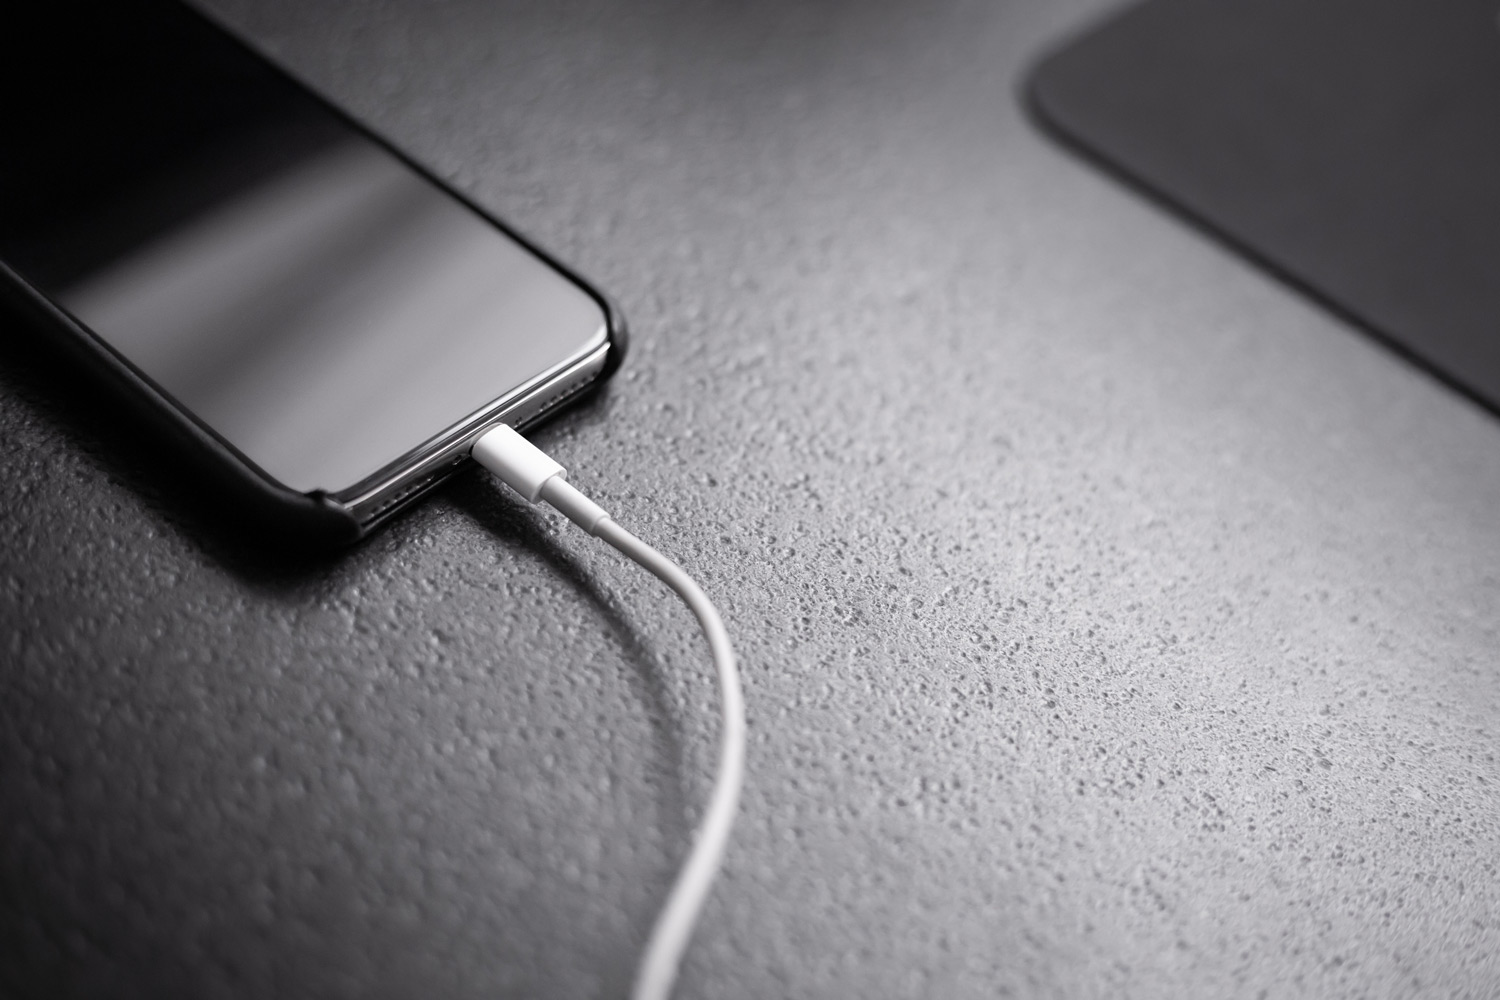 Chargement rapide de l'iPhone : Comment charger la batterie en moins de temps ?